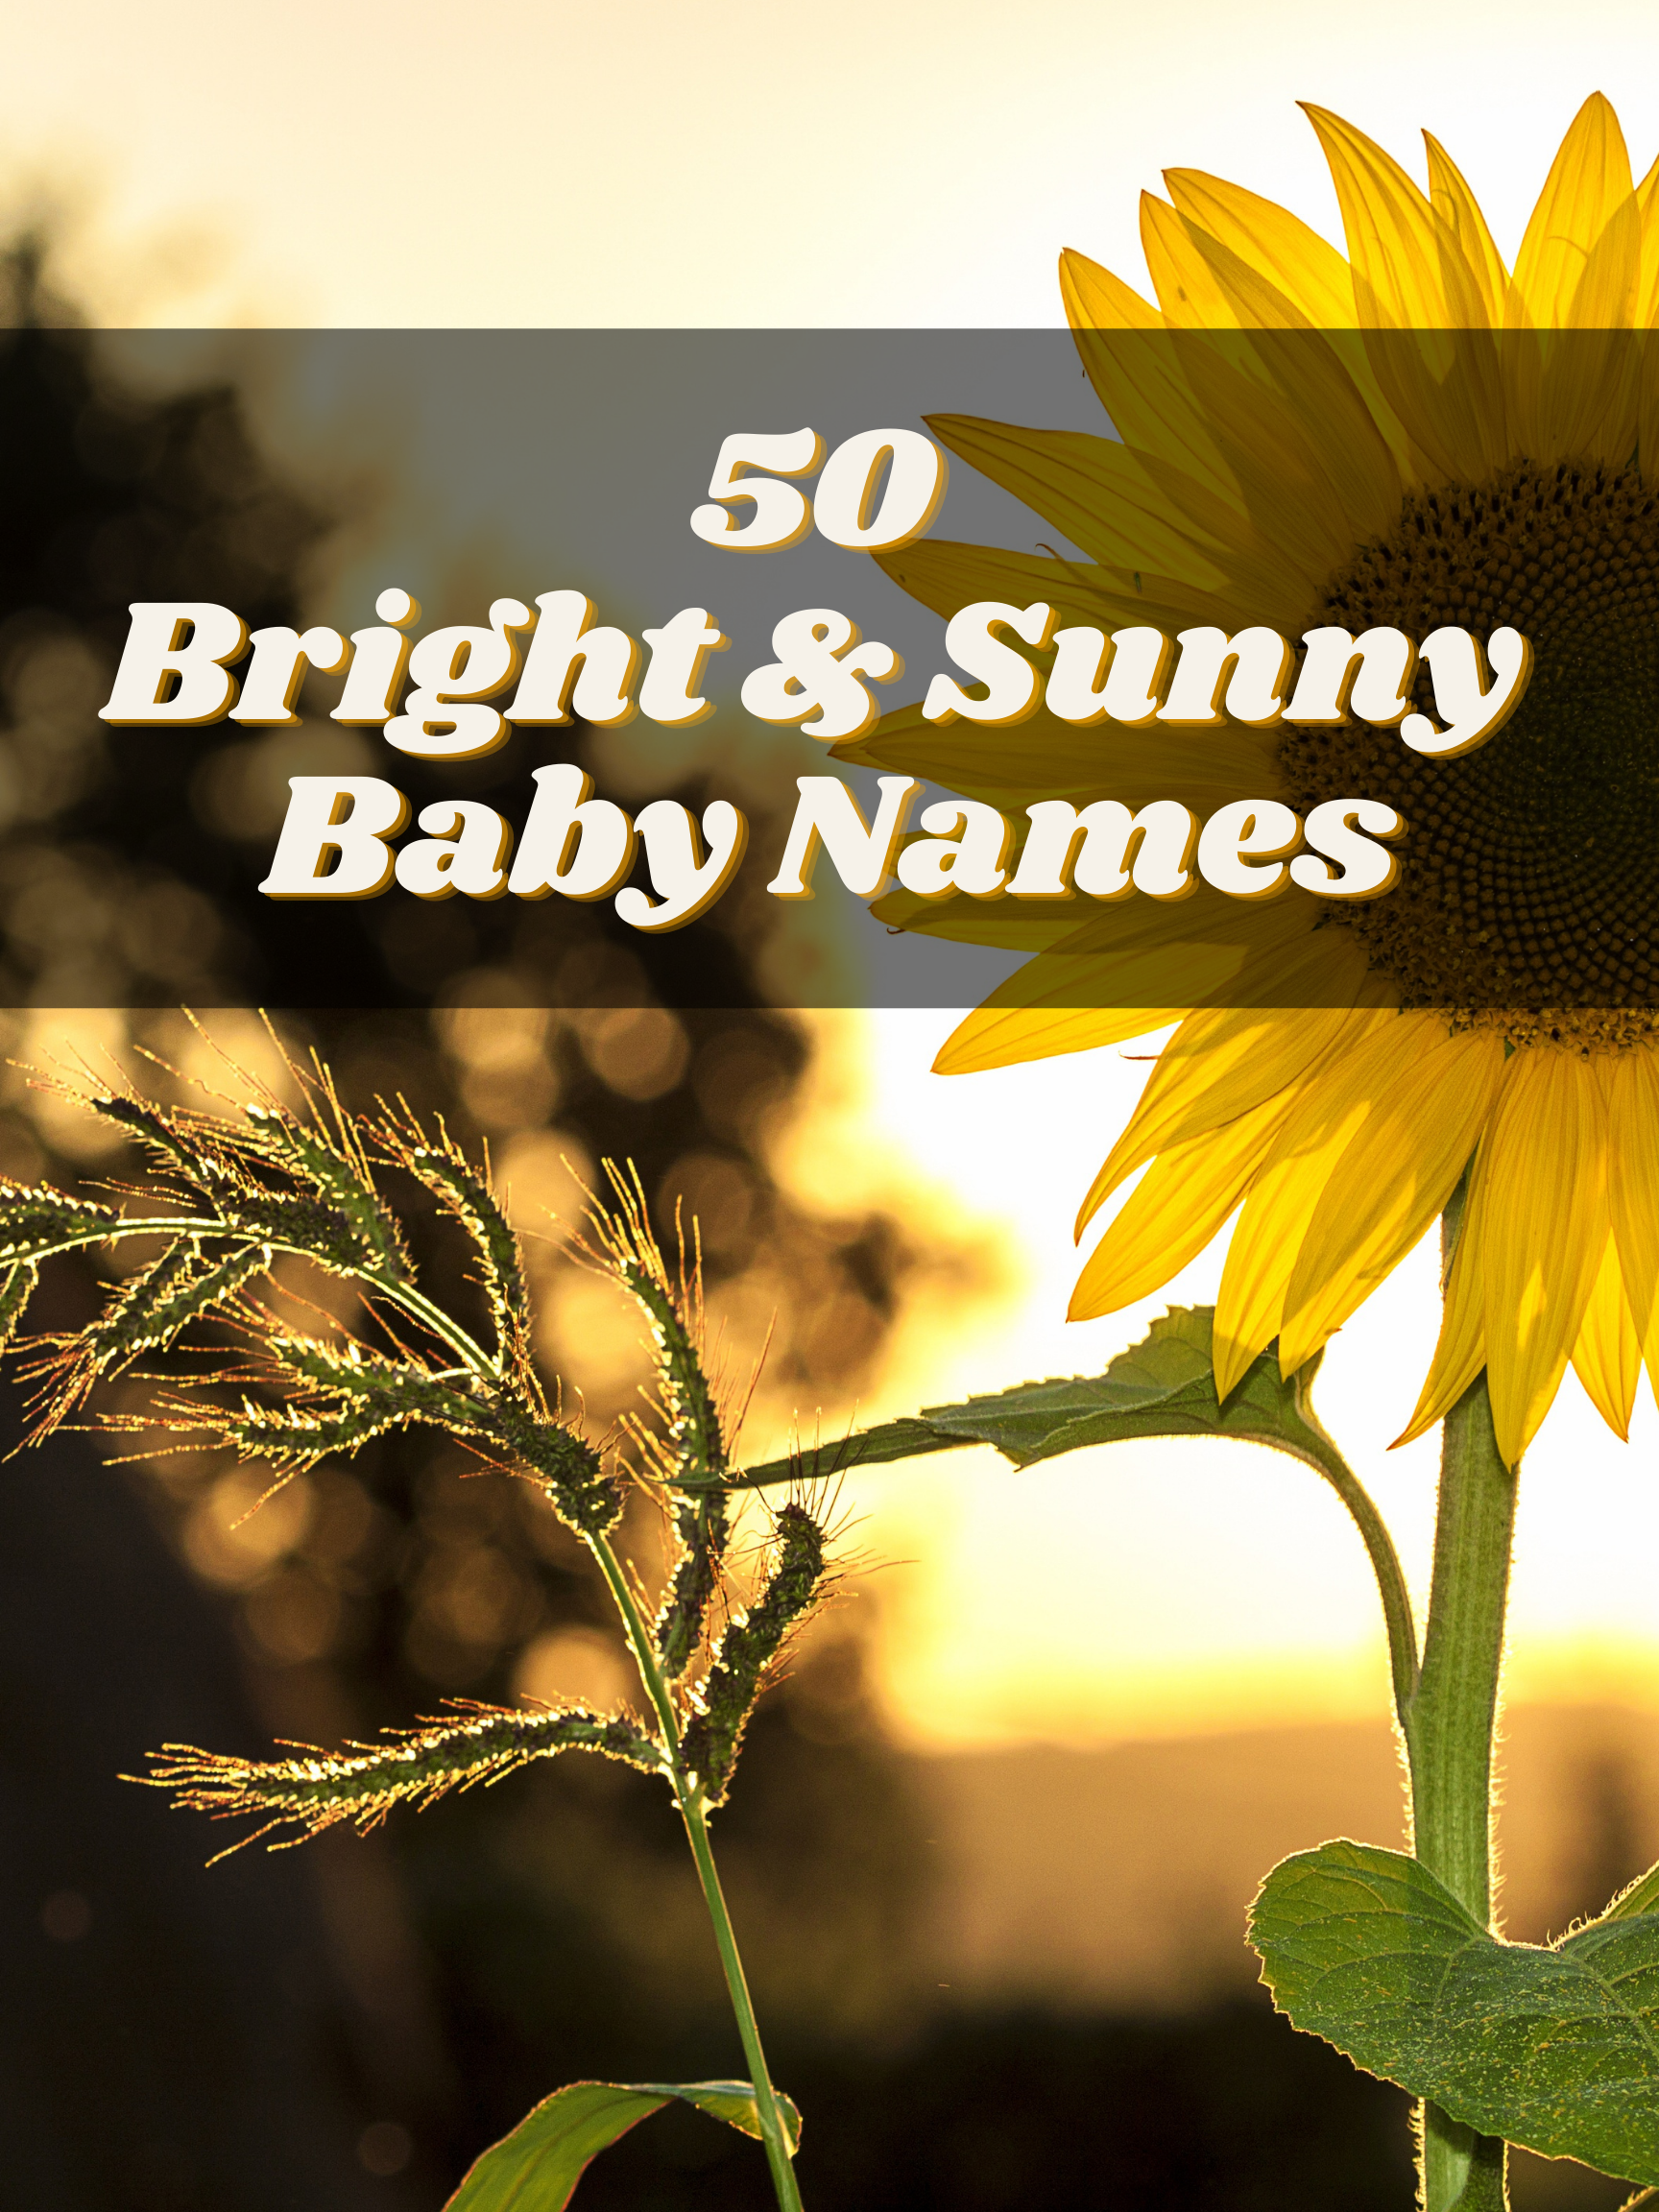 50 Bright & Sunny Baby Names